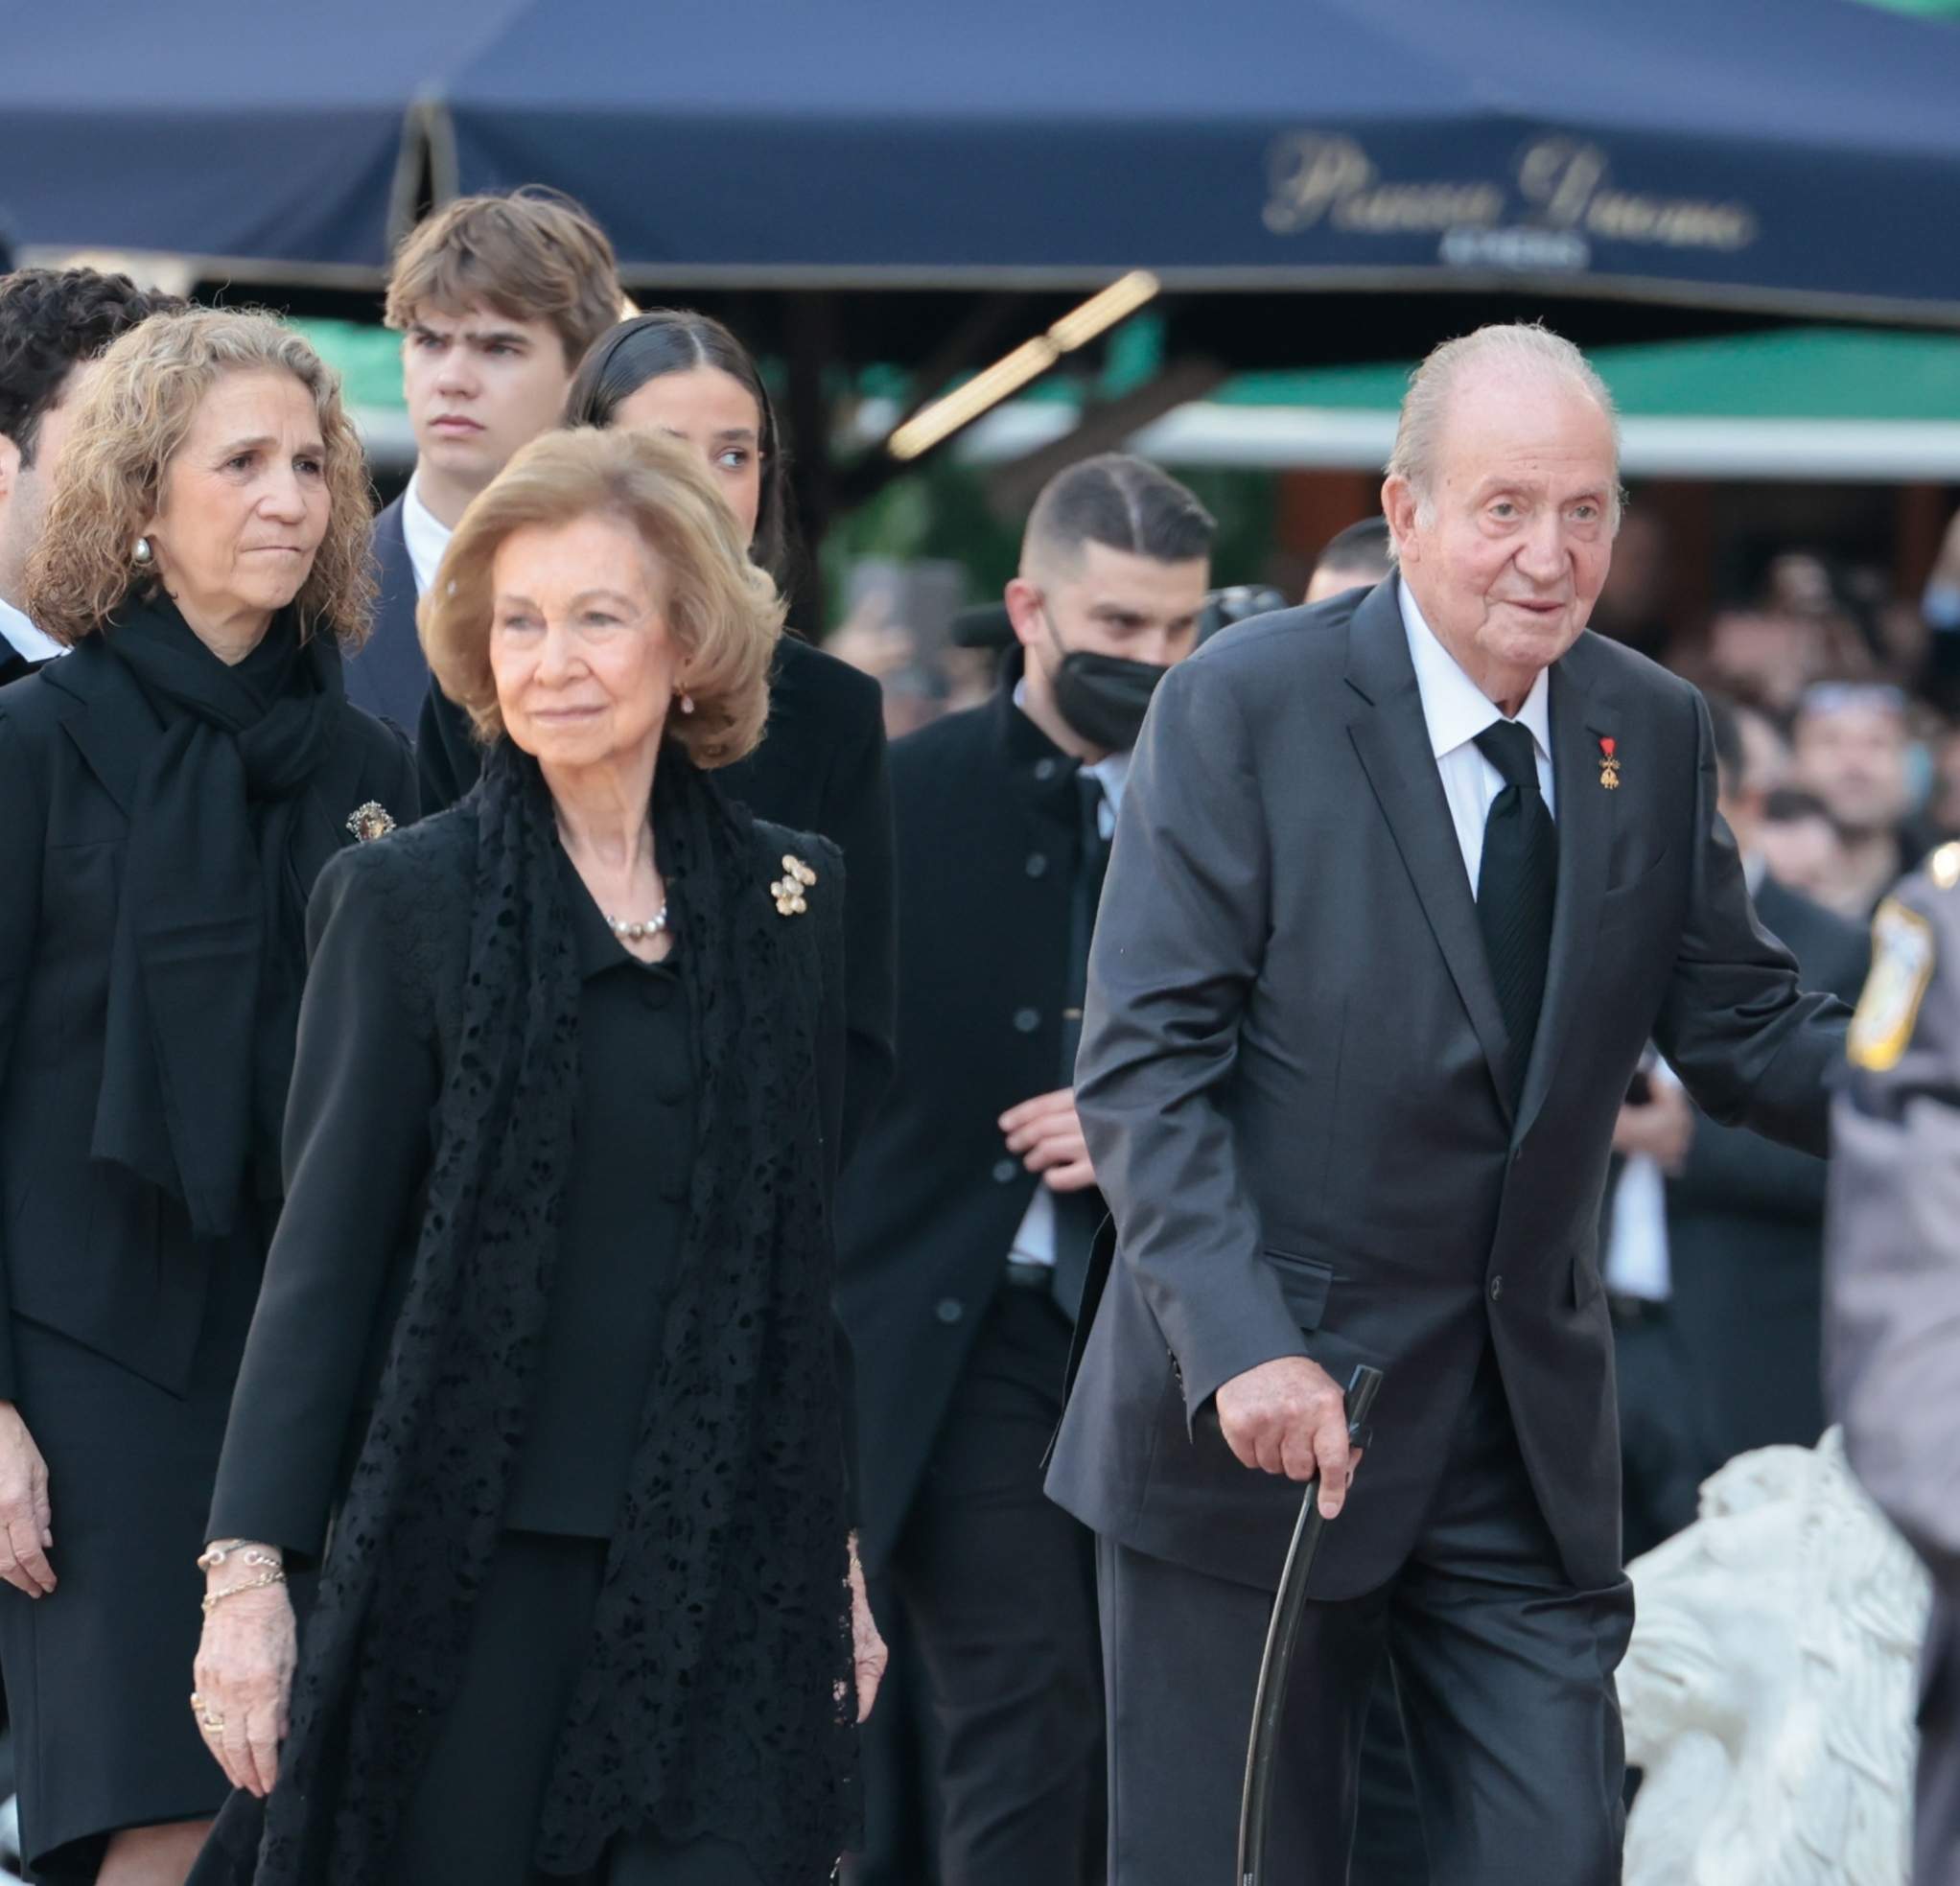 Joan Carles I manté relacions actives amb 4 amants a Abu Dhabi